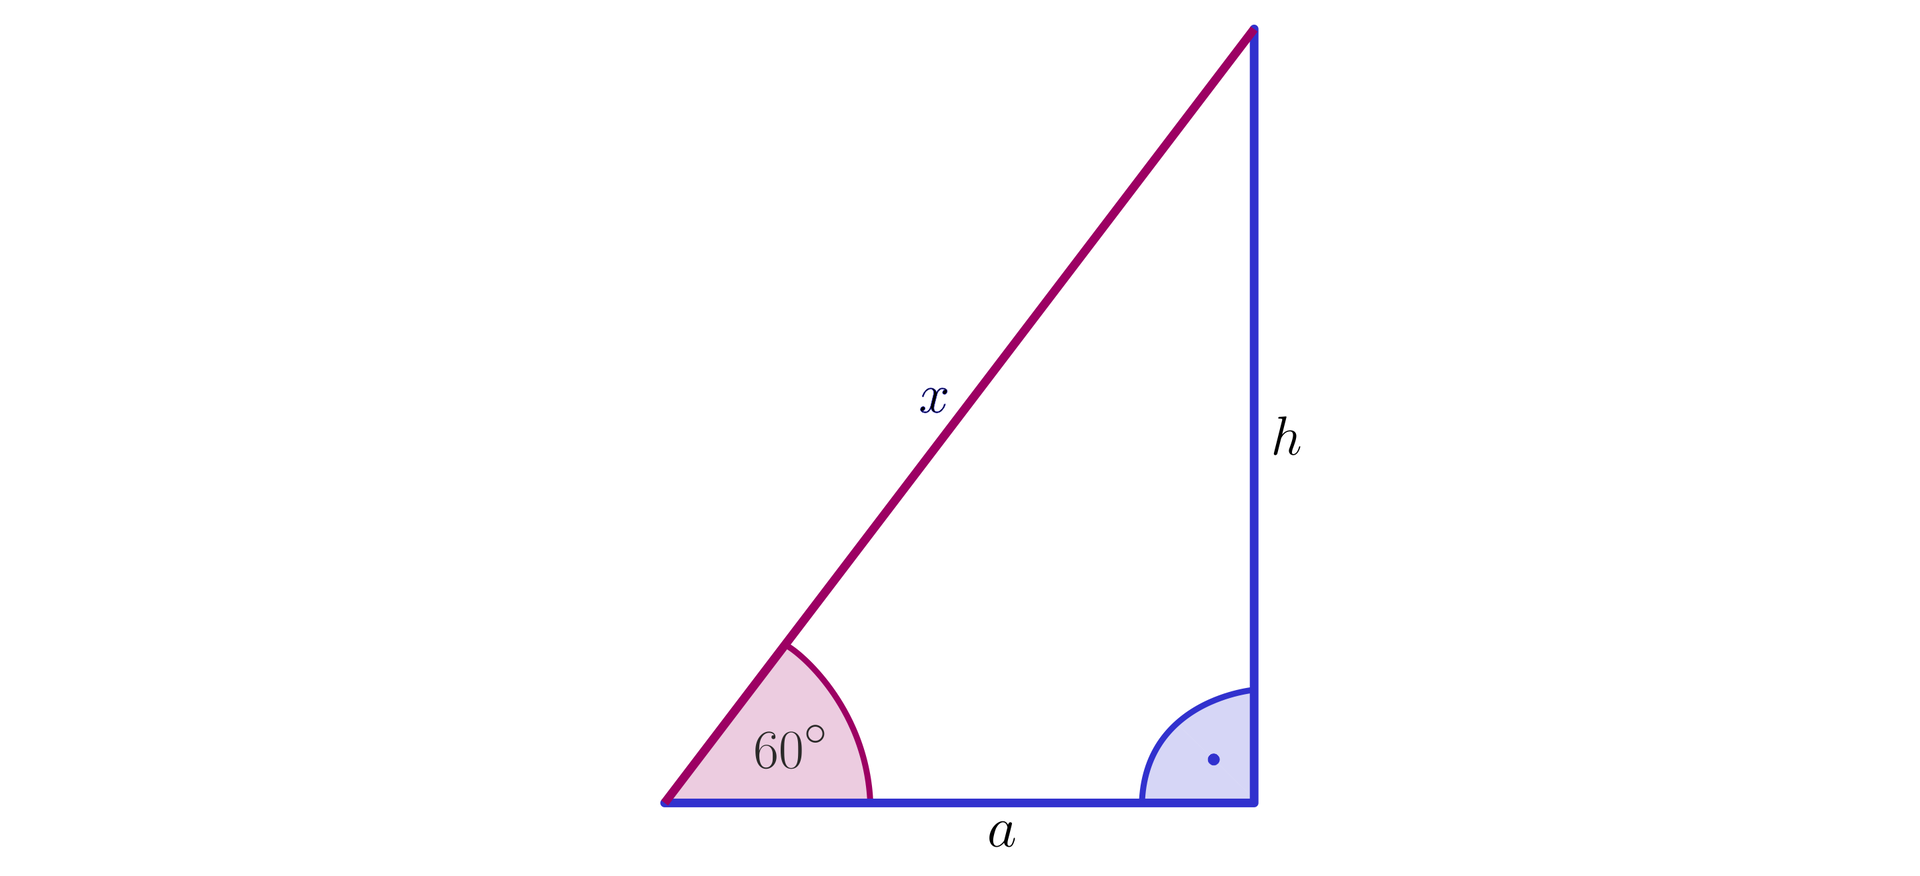 Na ilustracji przedstawiono trójkąt prostokątny o przyprostokątnych długości a i h, oraz przeciwprostokątnej długości x. Kąt naprzeciw przyprostokątnej h wynosi 60 stopni.